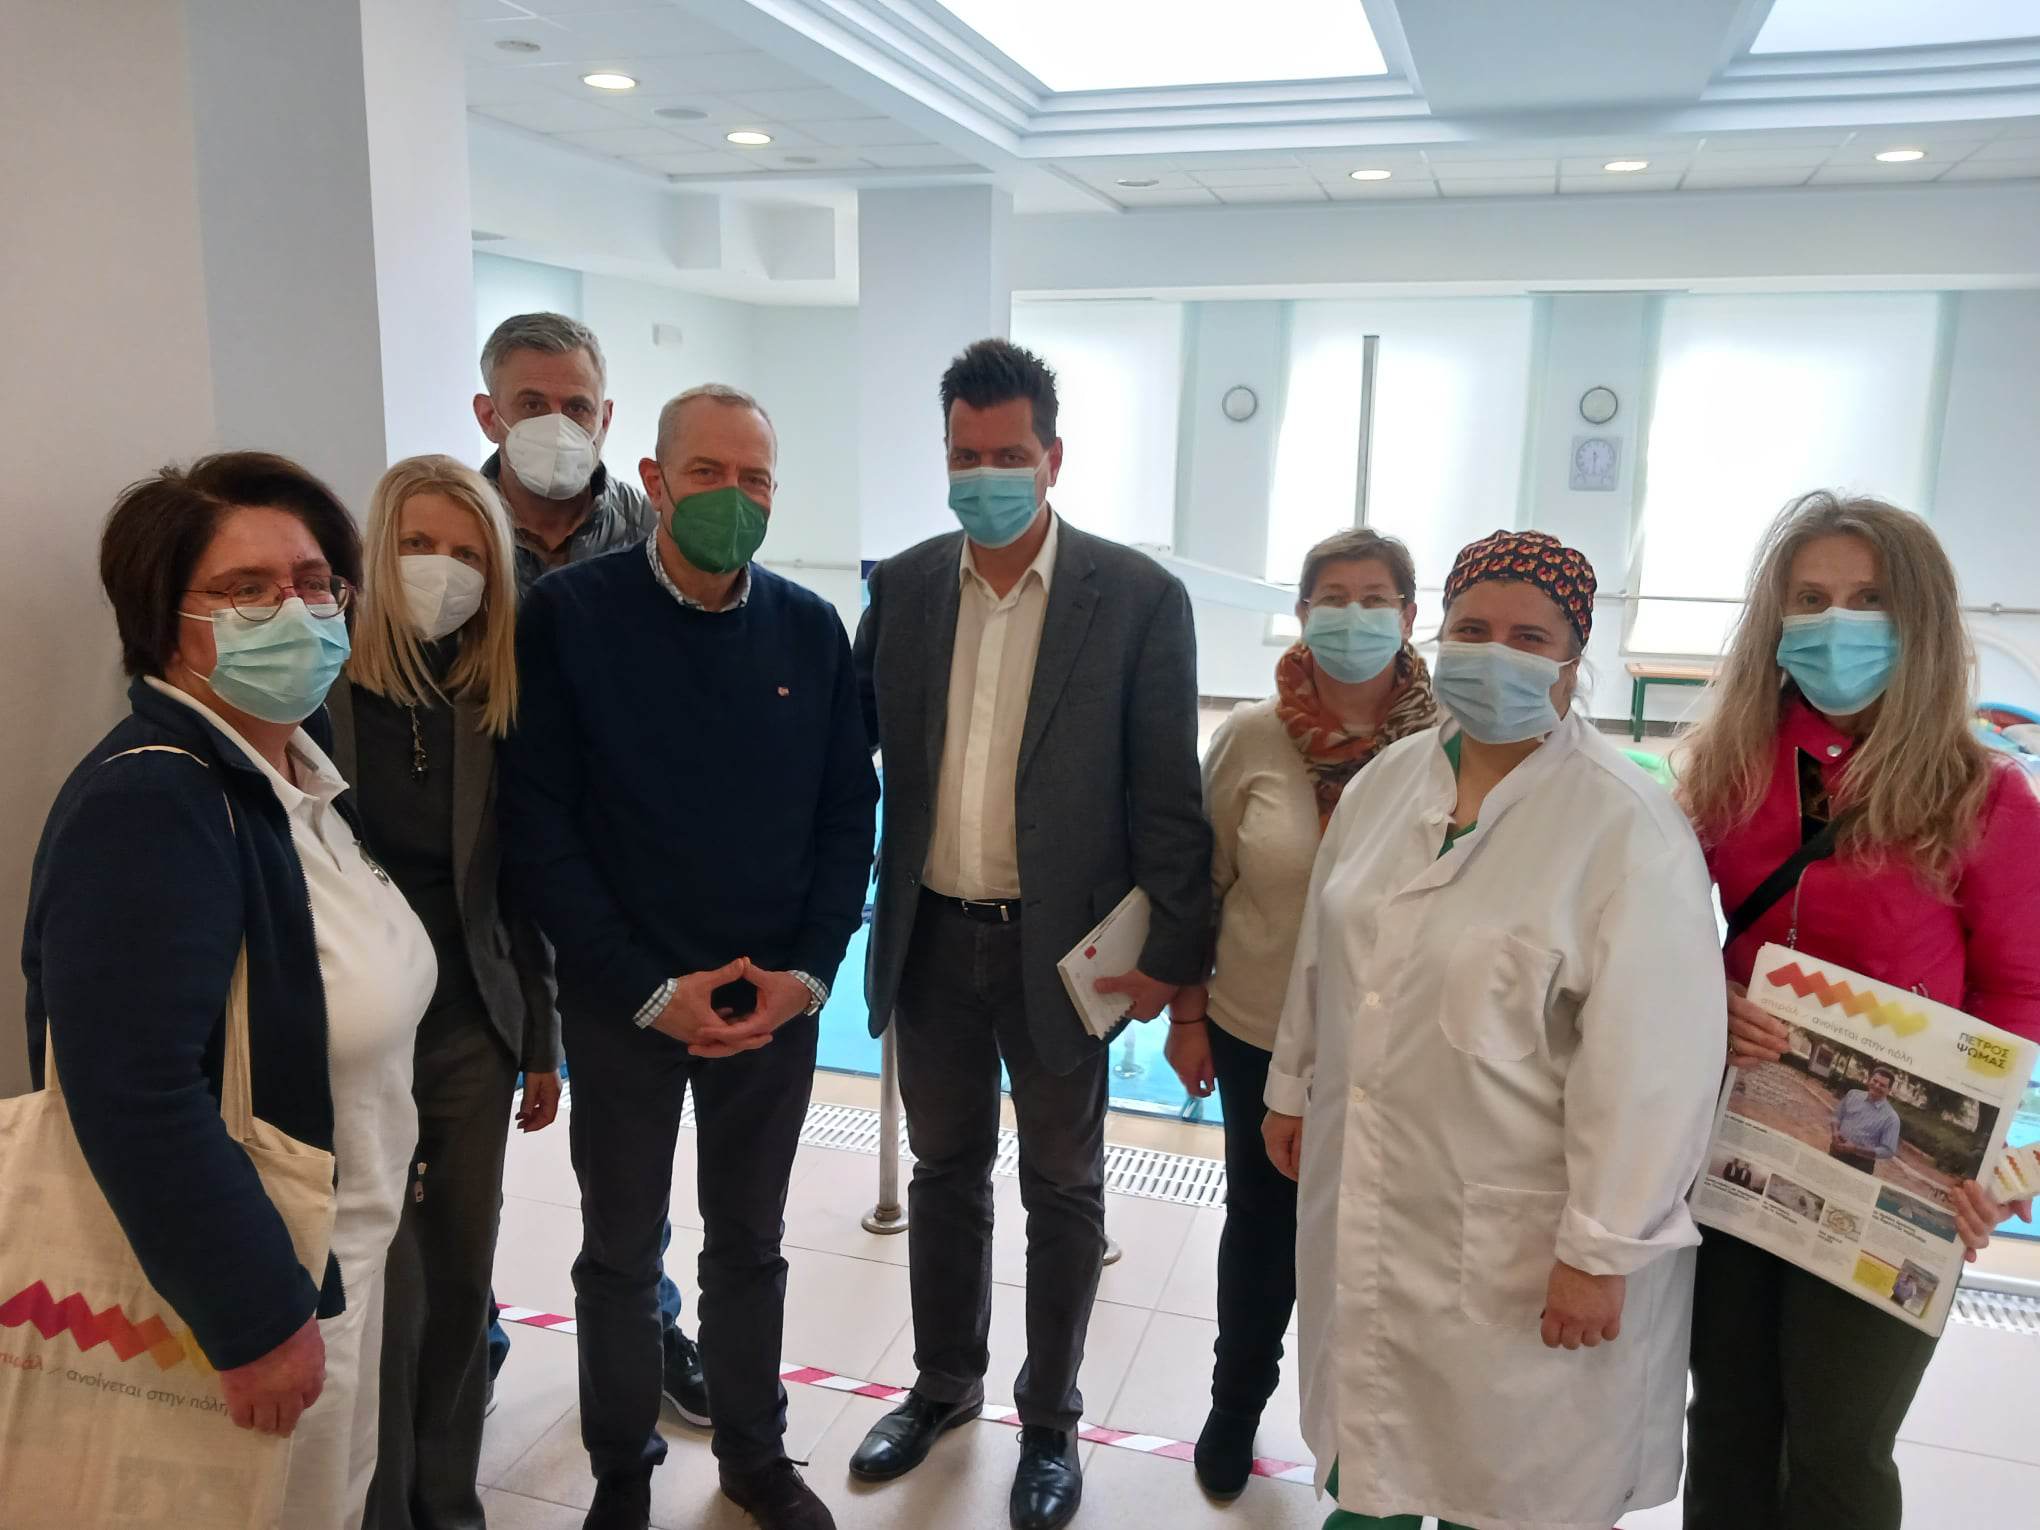 σπιράλ: Επίσκεψη Ψωμά στο Πανεπιστημιακό Νοσοκομείο του Ρίου - ΦΩΤΟ